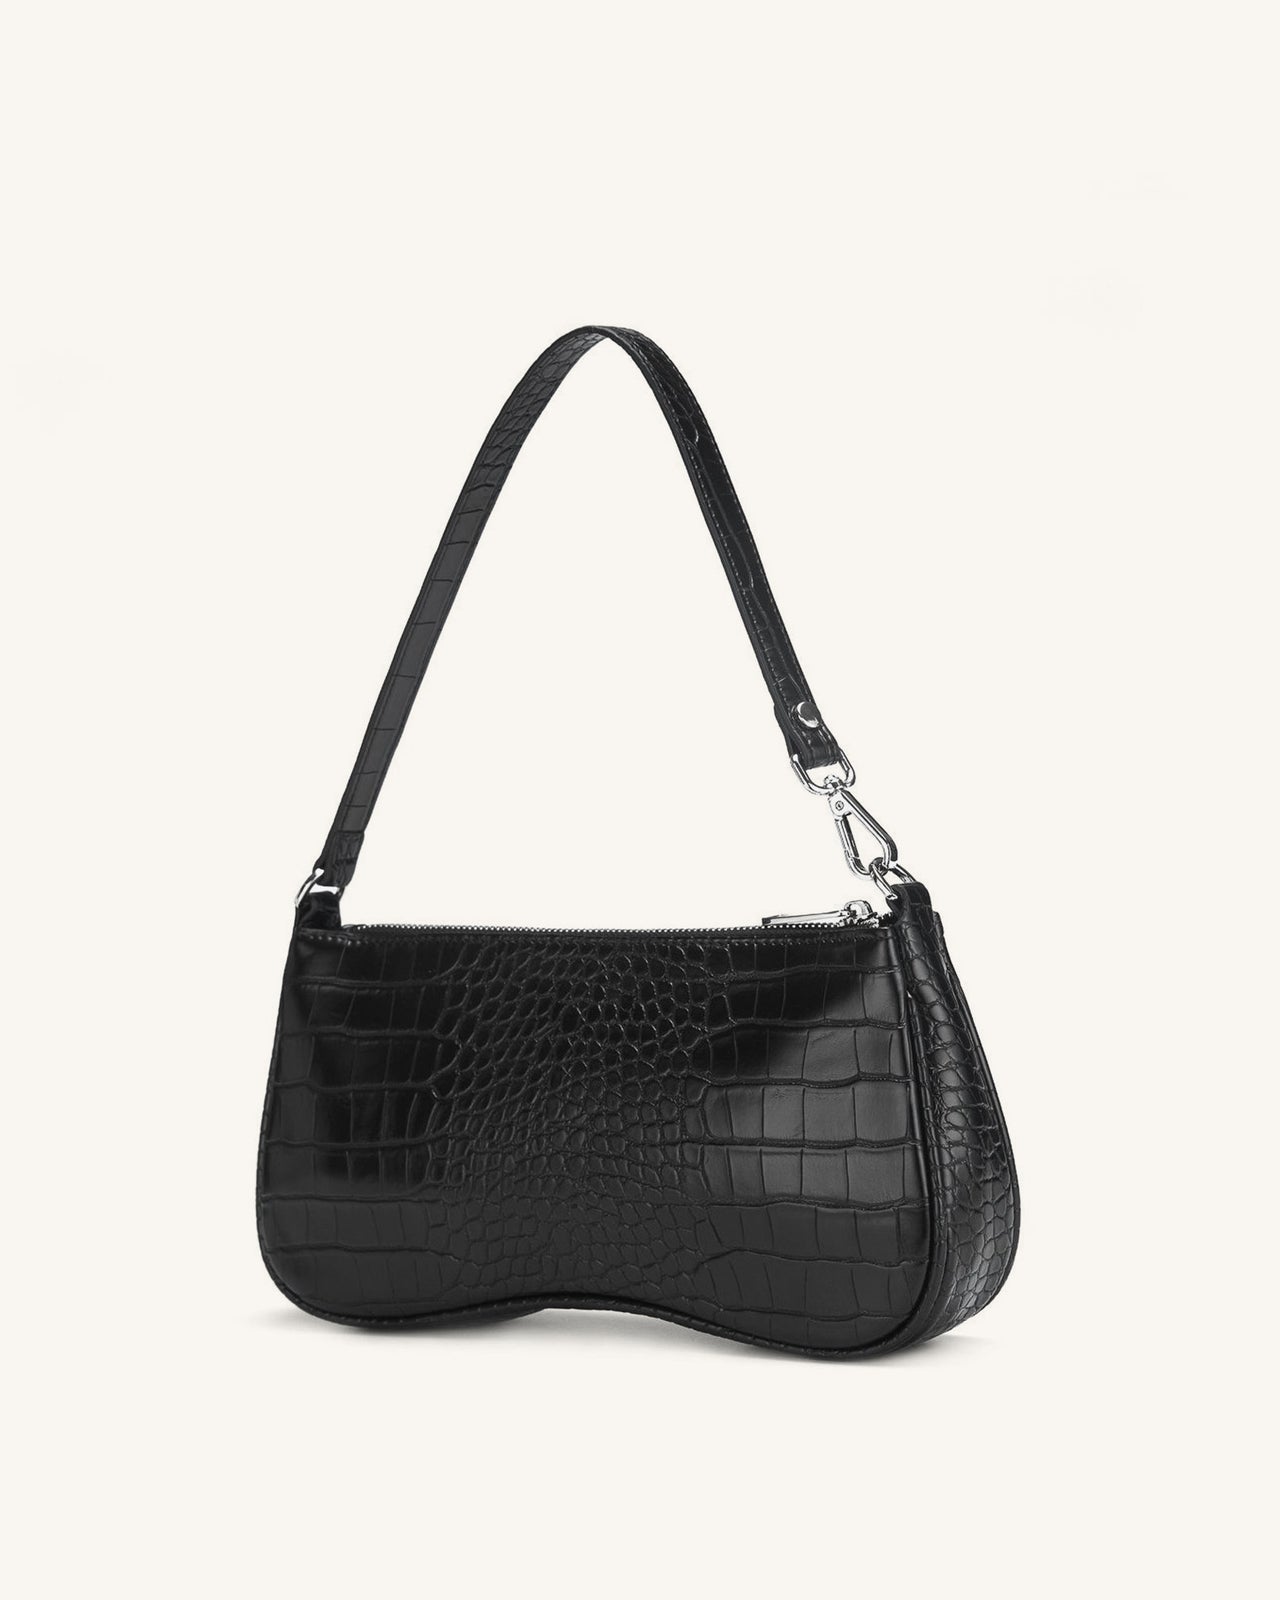 JW PEI Handbags : Buy JW PEI FEI Half Moon Bag Navy Online